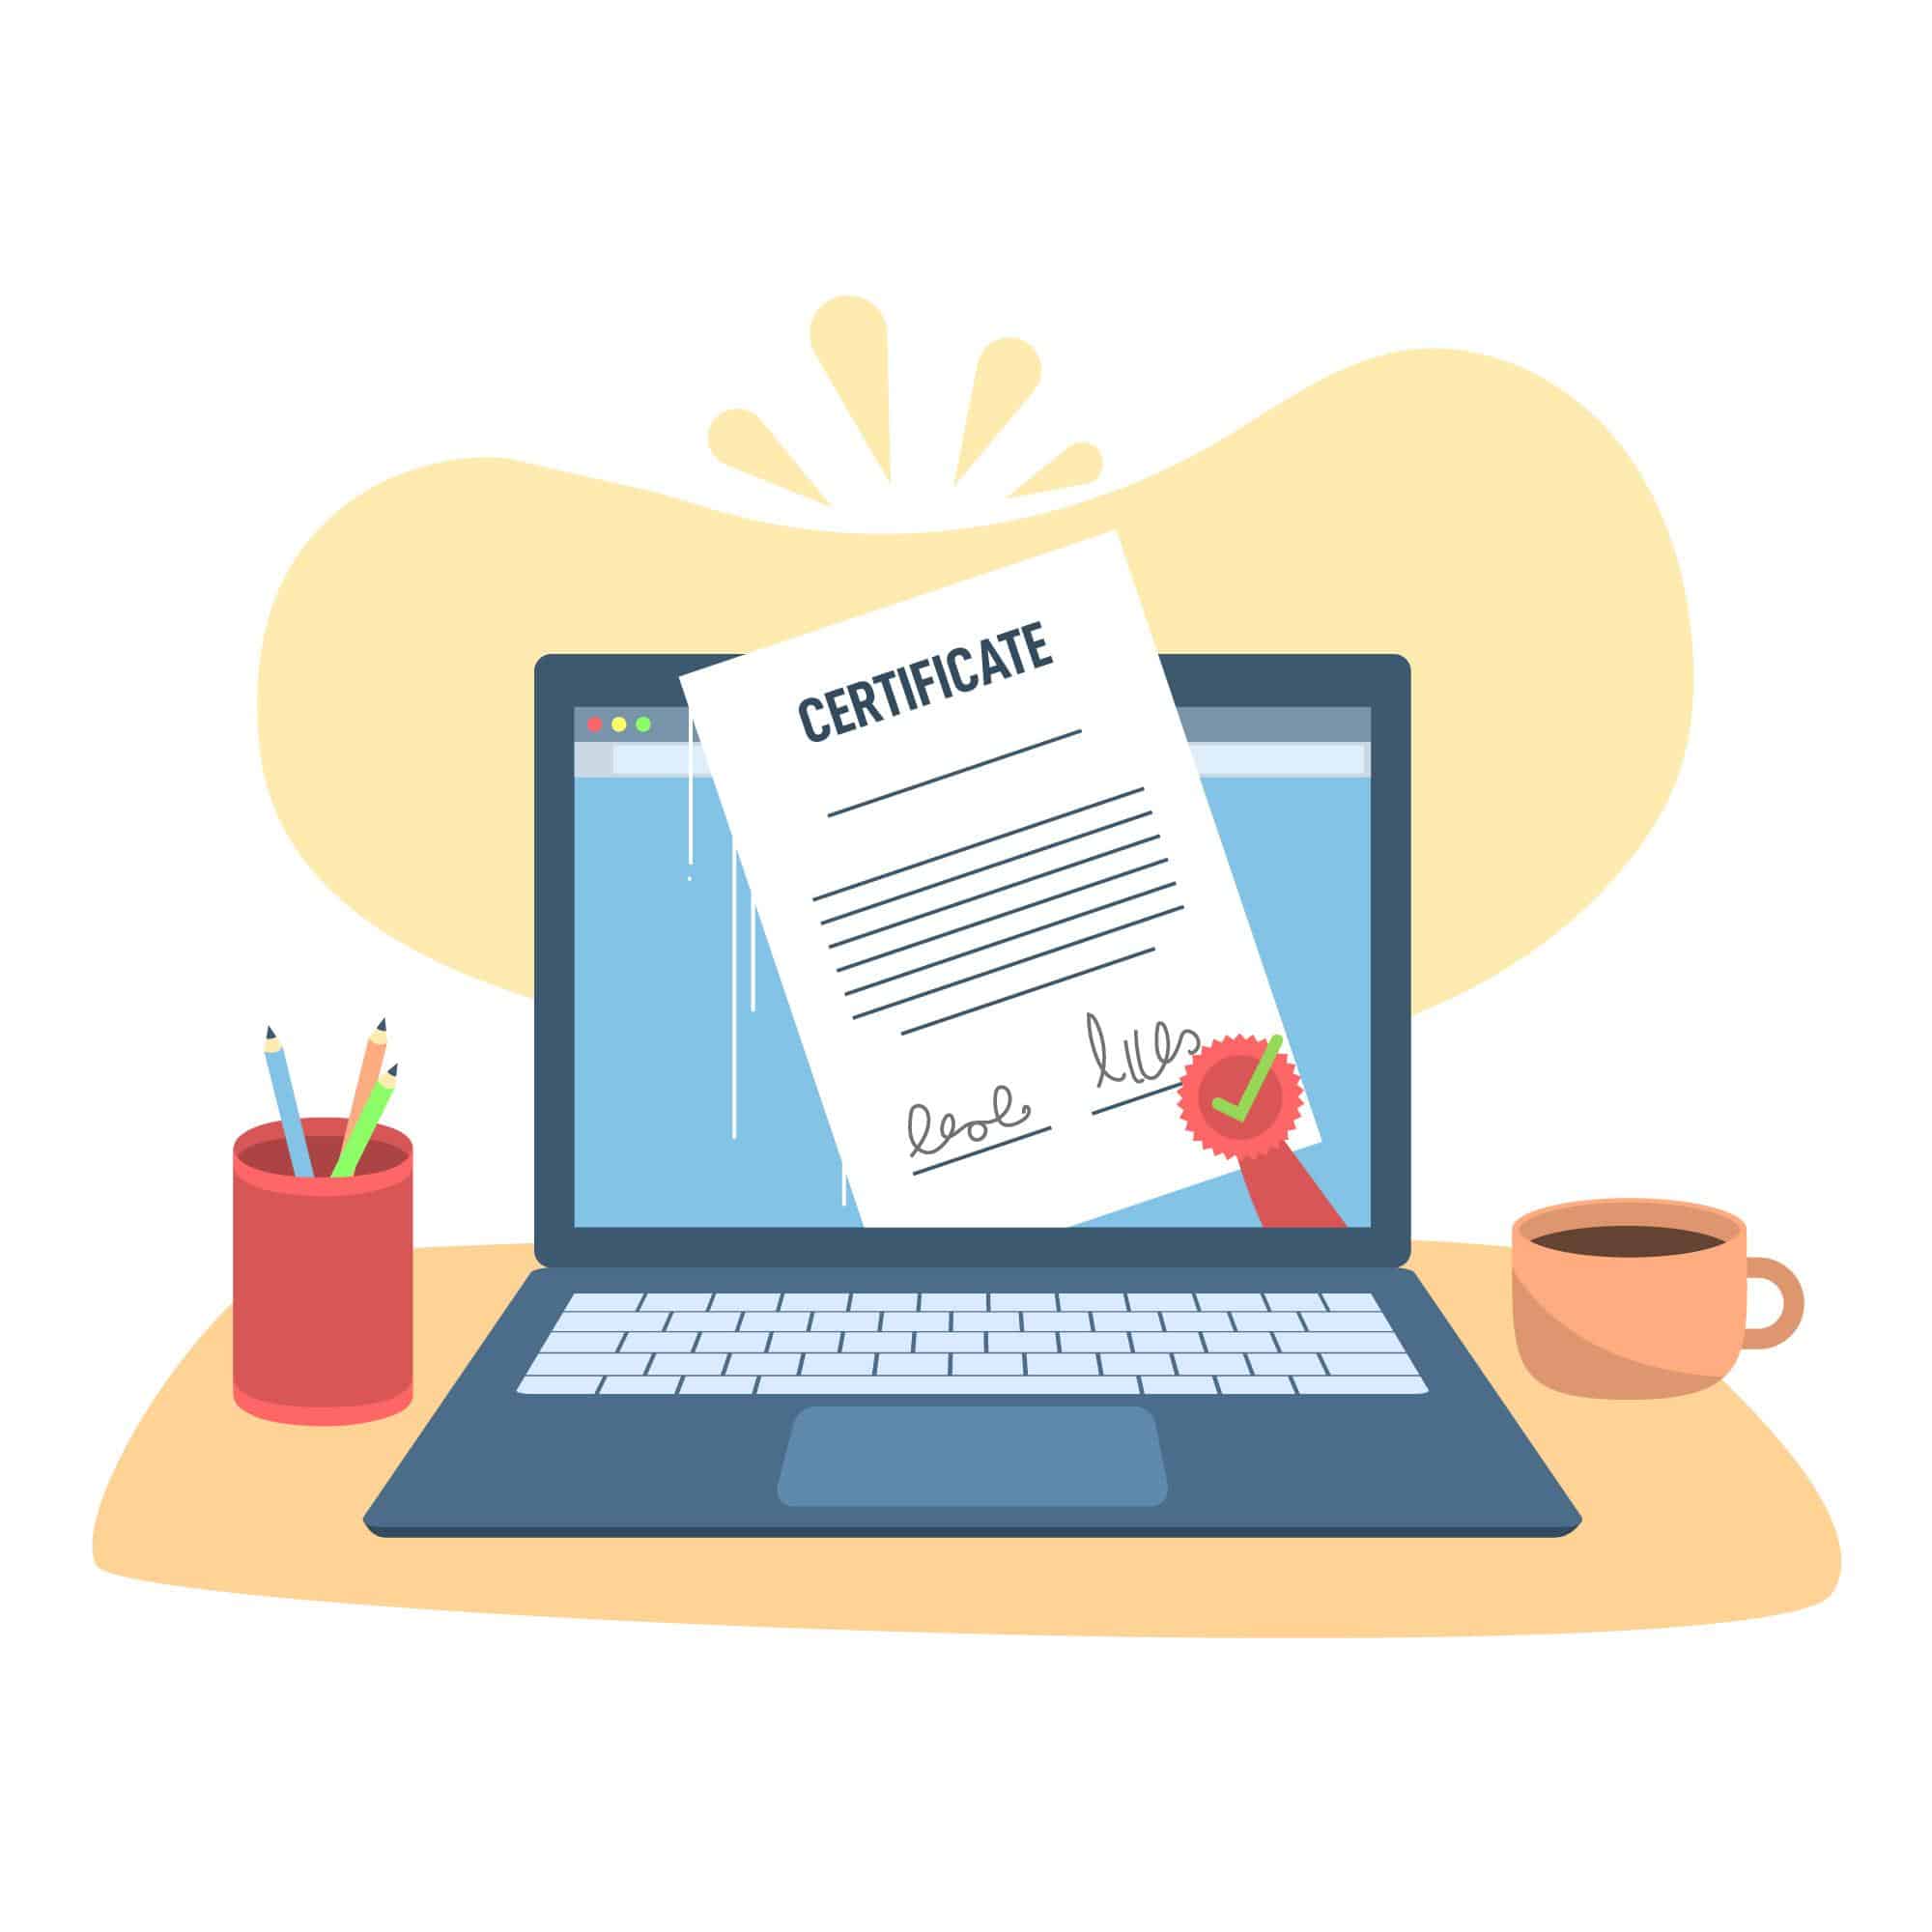 Generate a Certificate Signing Request (CSR)